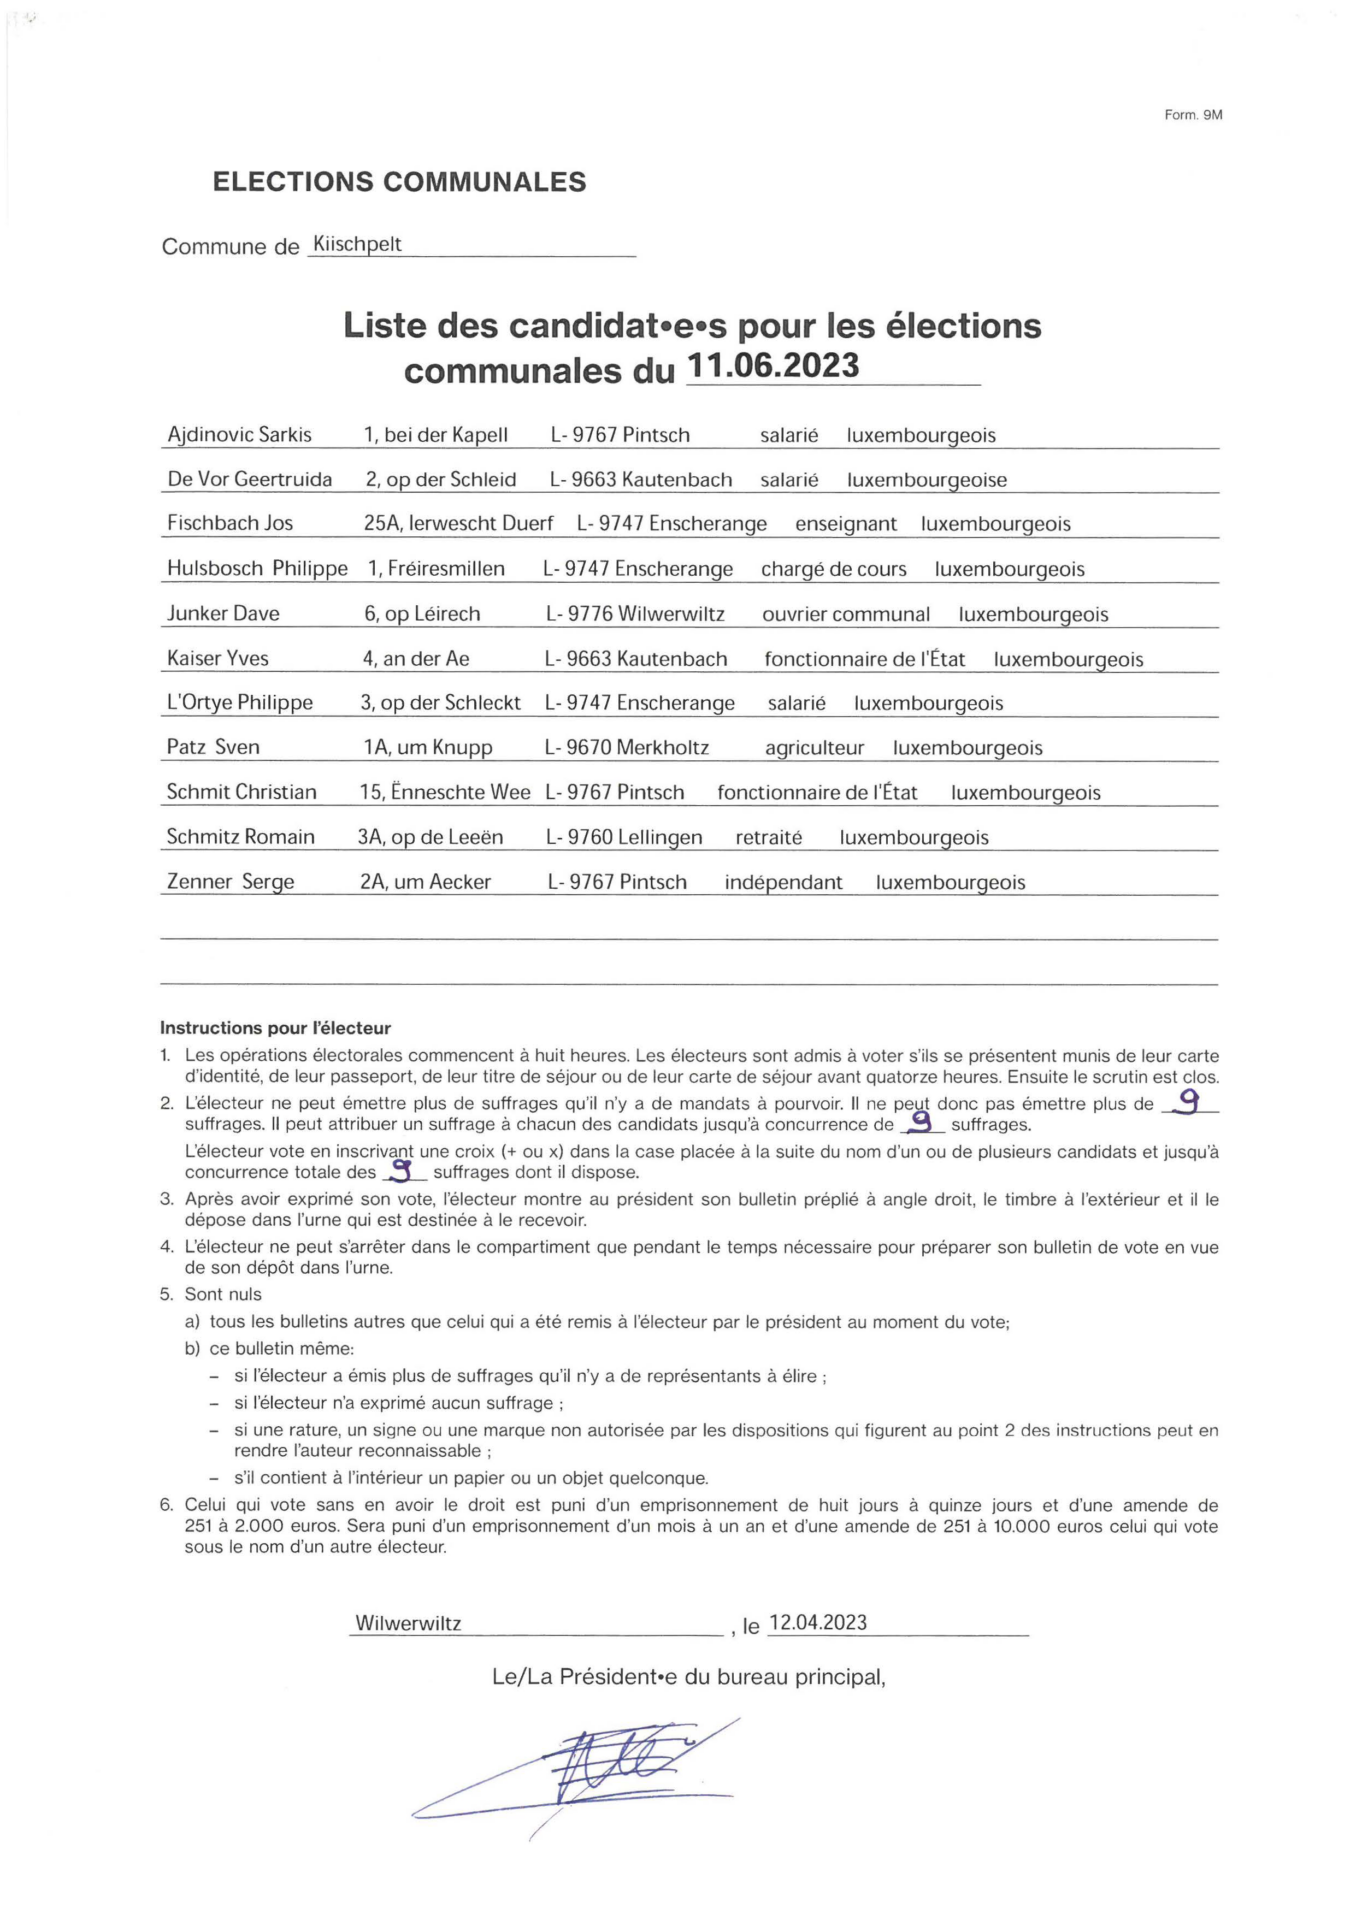 Liste des candidat(e)s pour les élections communales du 11.06.2023